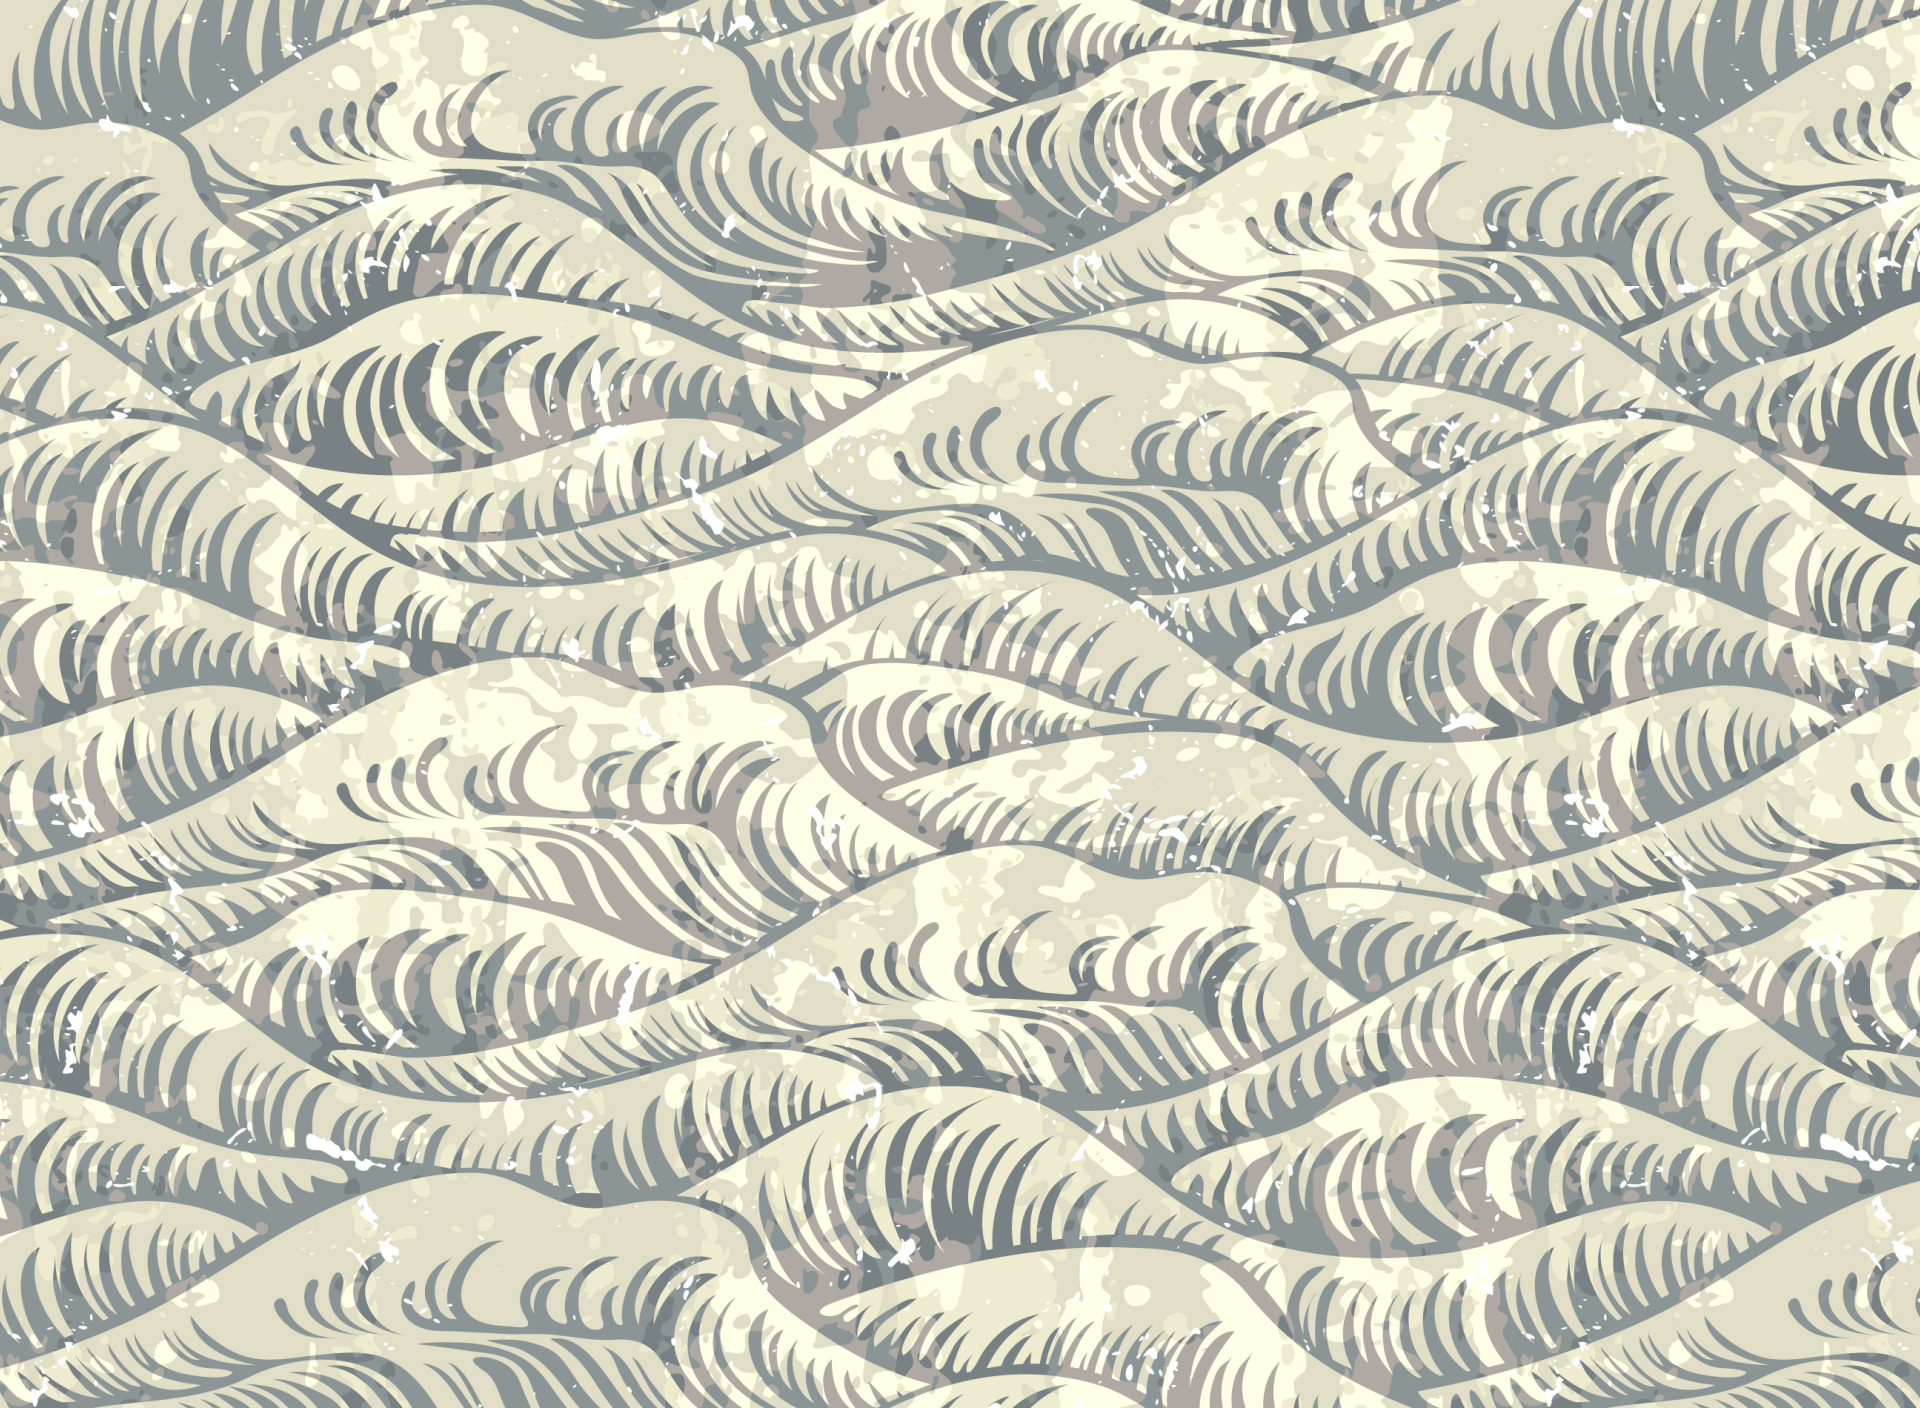 GoodFon.com - Free Wallpapers, download. sea, wave, vector, texture. 